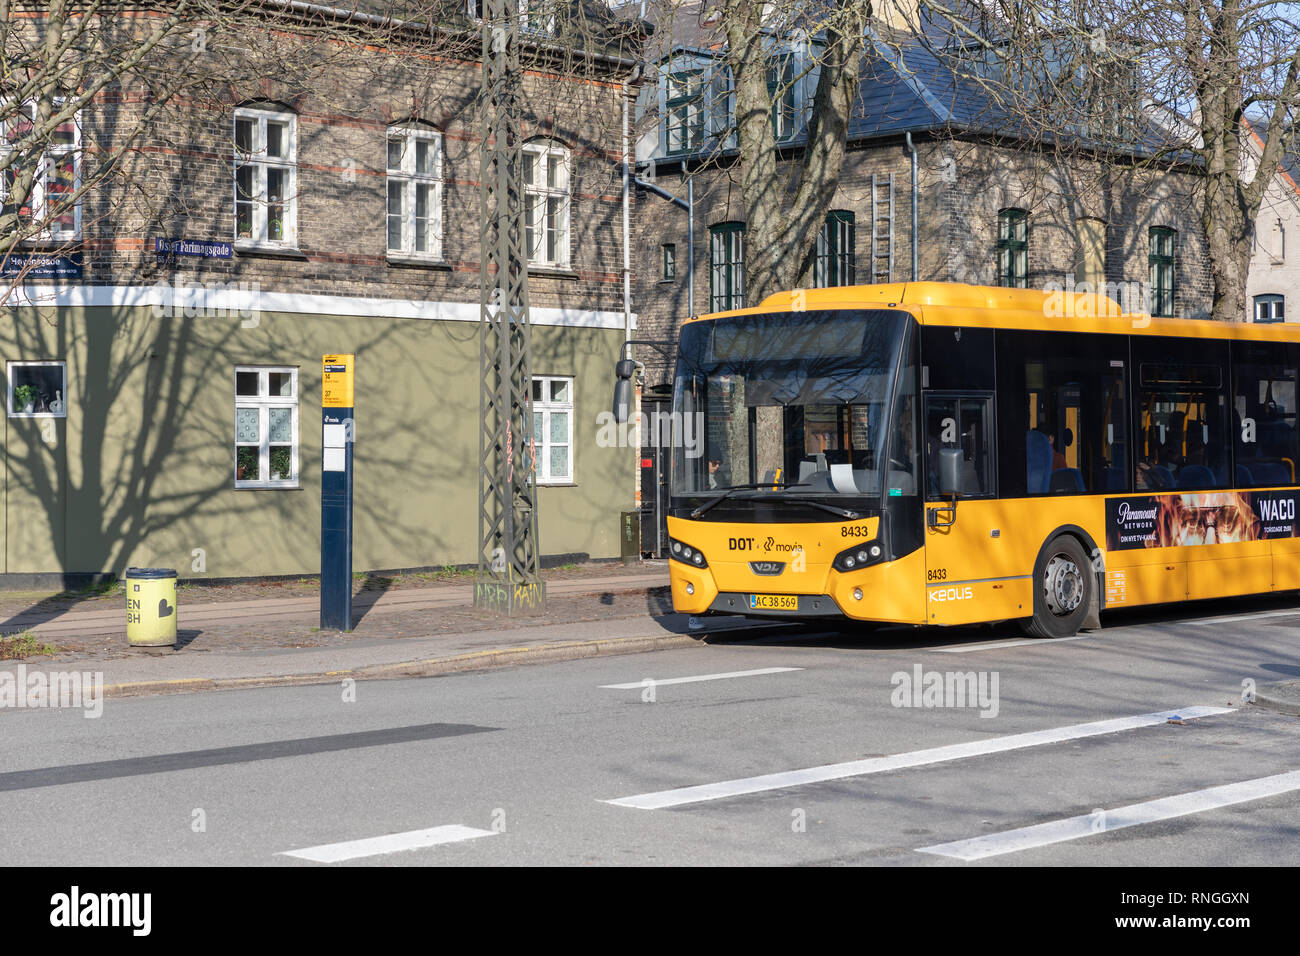 Yellow bus at a bus stop, Øster Farimagsgade, Copenhagen, Denmark Stock Photo